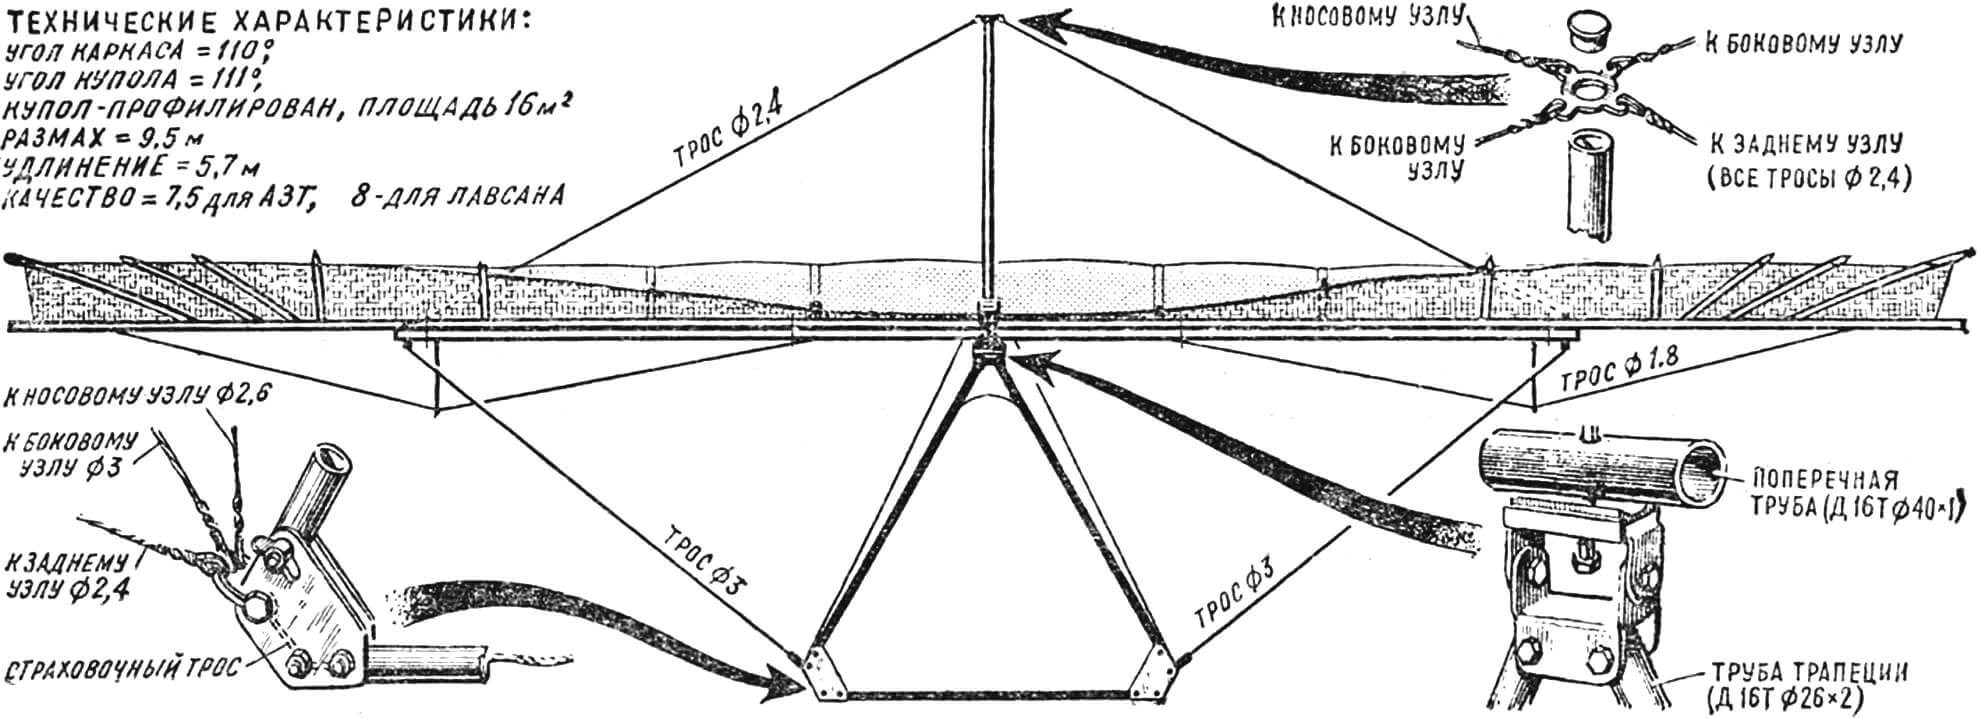 Рис. 2. Вид дельтаплана «Альбатрос» сзади и детали конструкции.